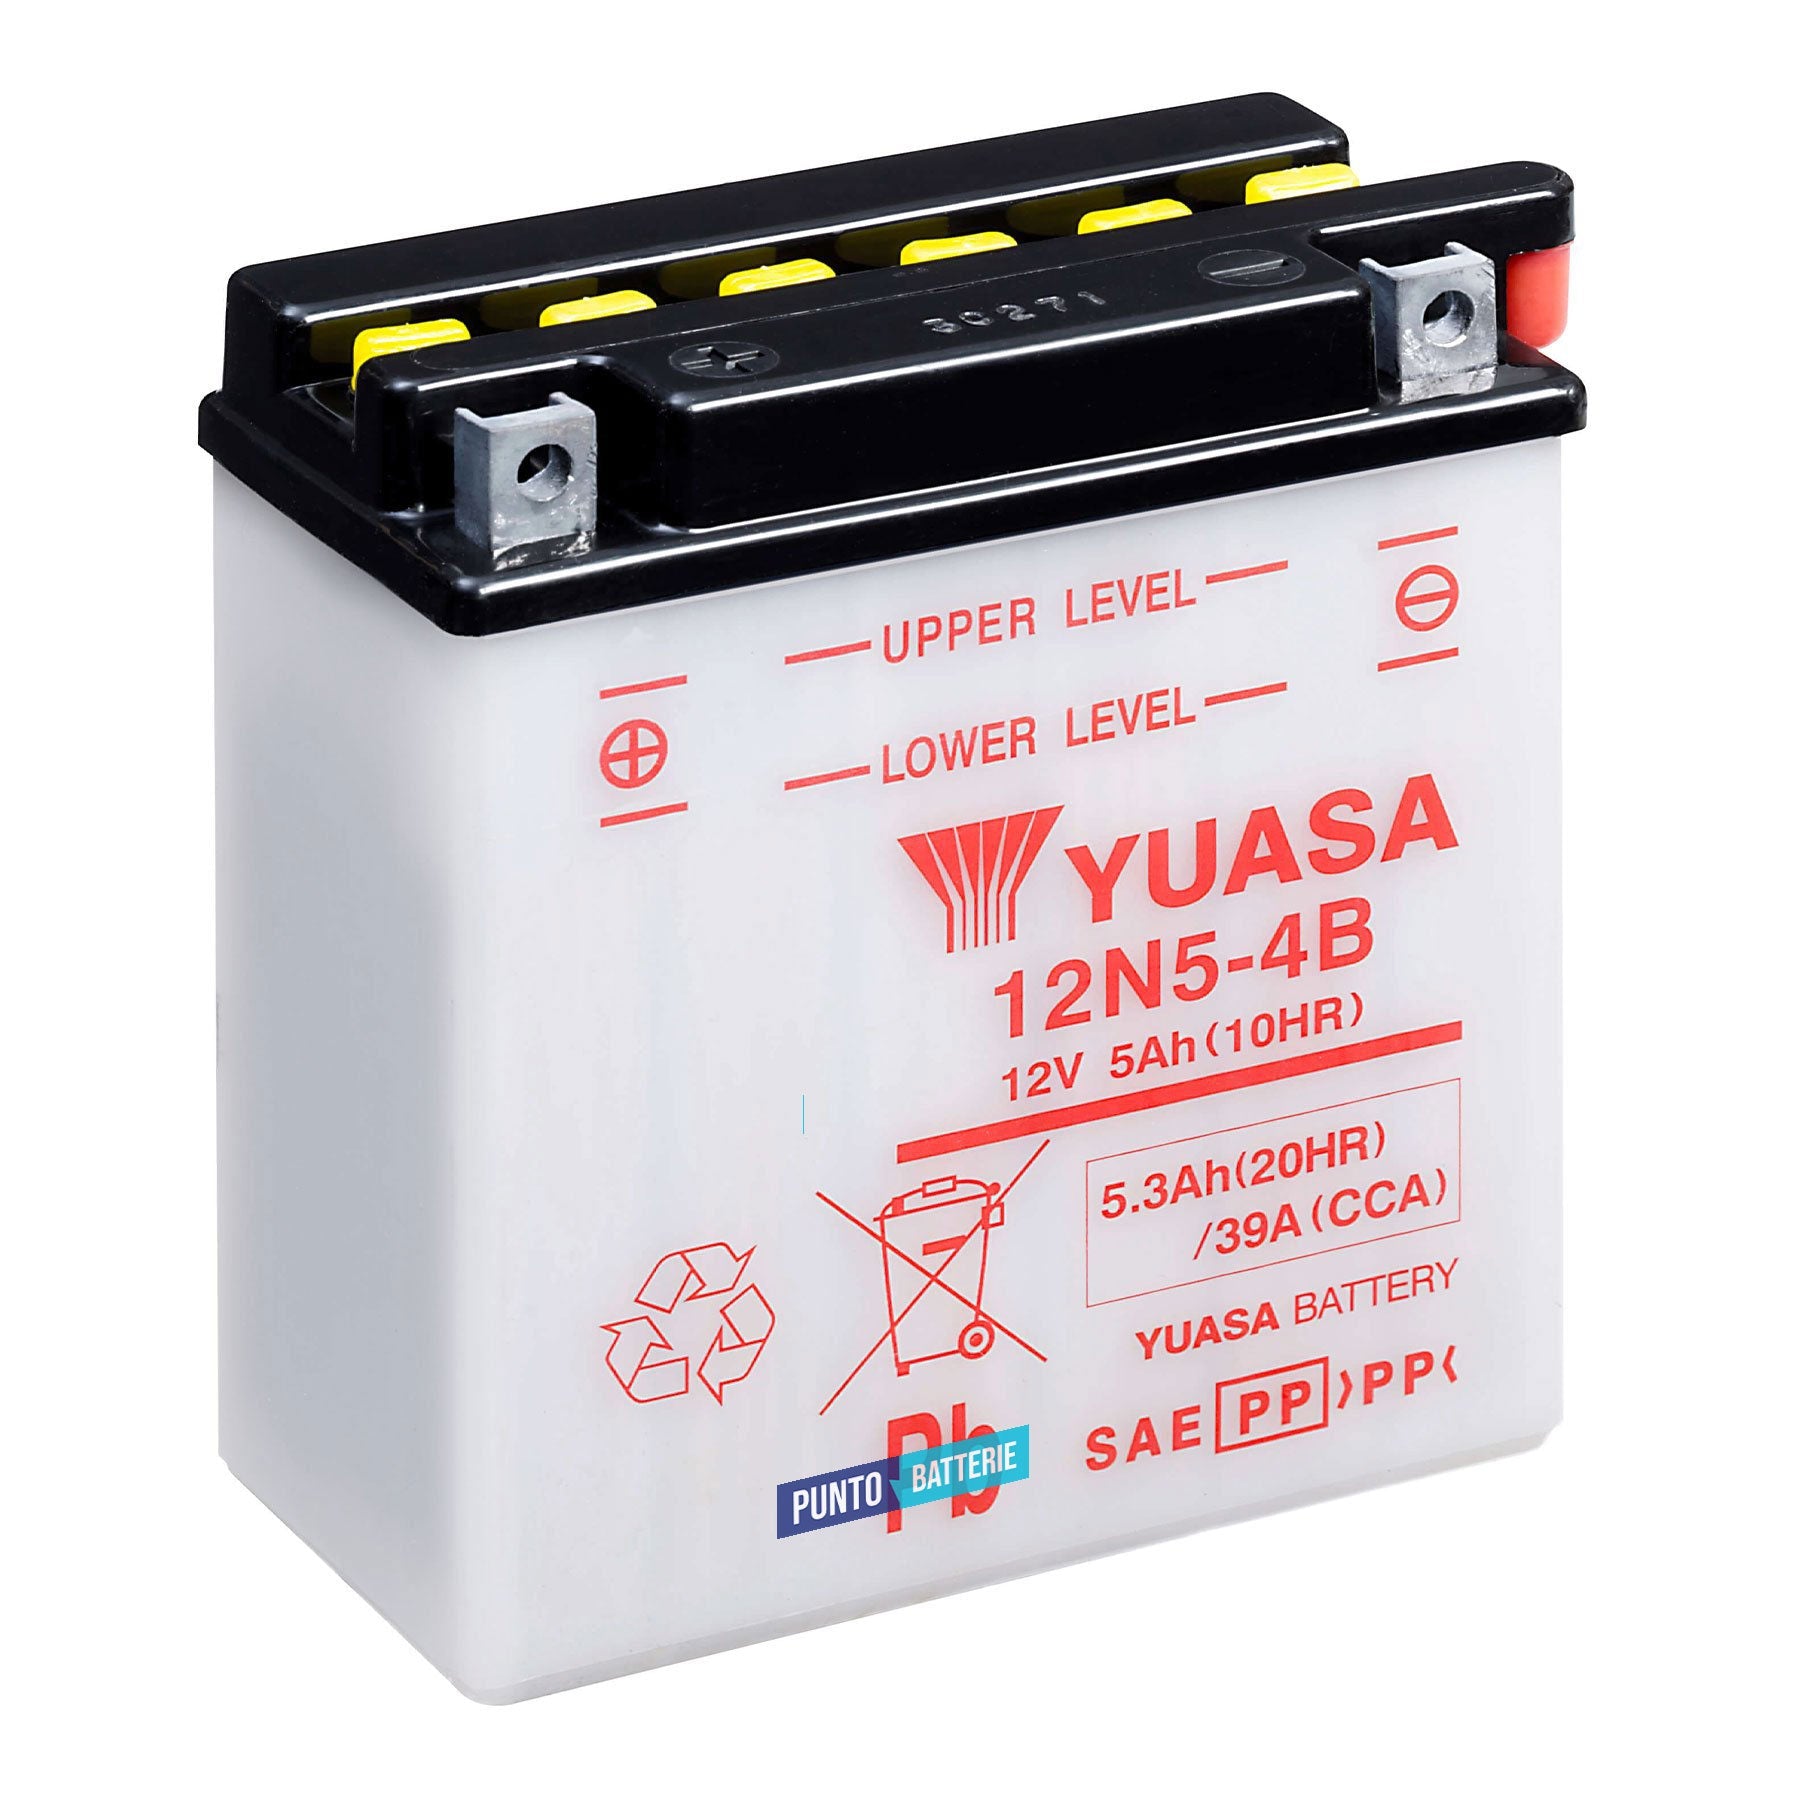 Batteria originale Yuasa Conventional 12N5-4B, dimensioni 120 x 60 x 130, polo positivo a sinistra, 12 volt, 5 amperora, 39 ampere. Batteria per moto, scooter e powersport.